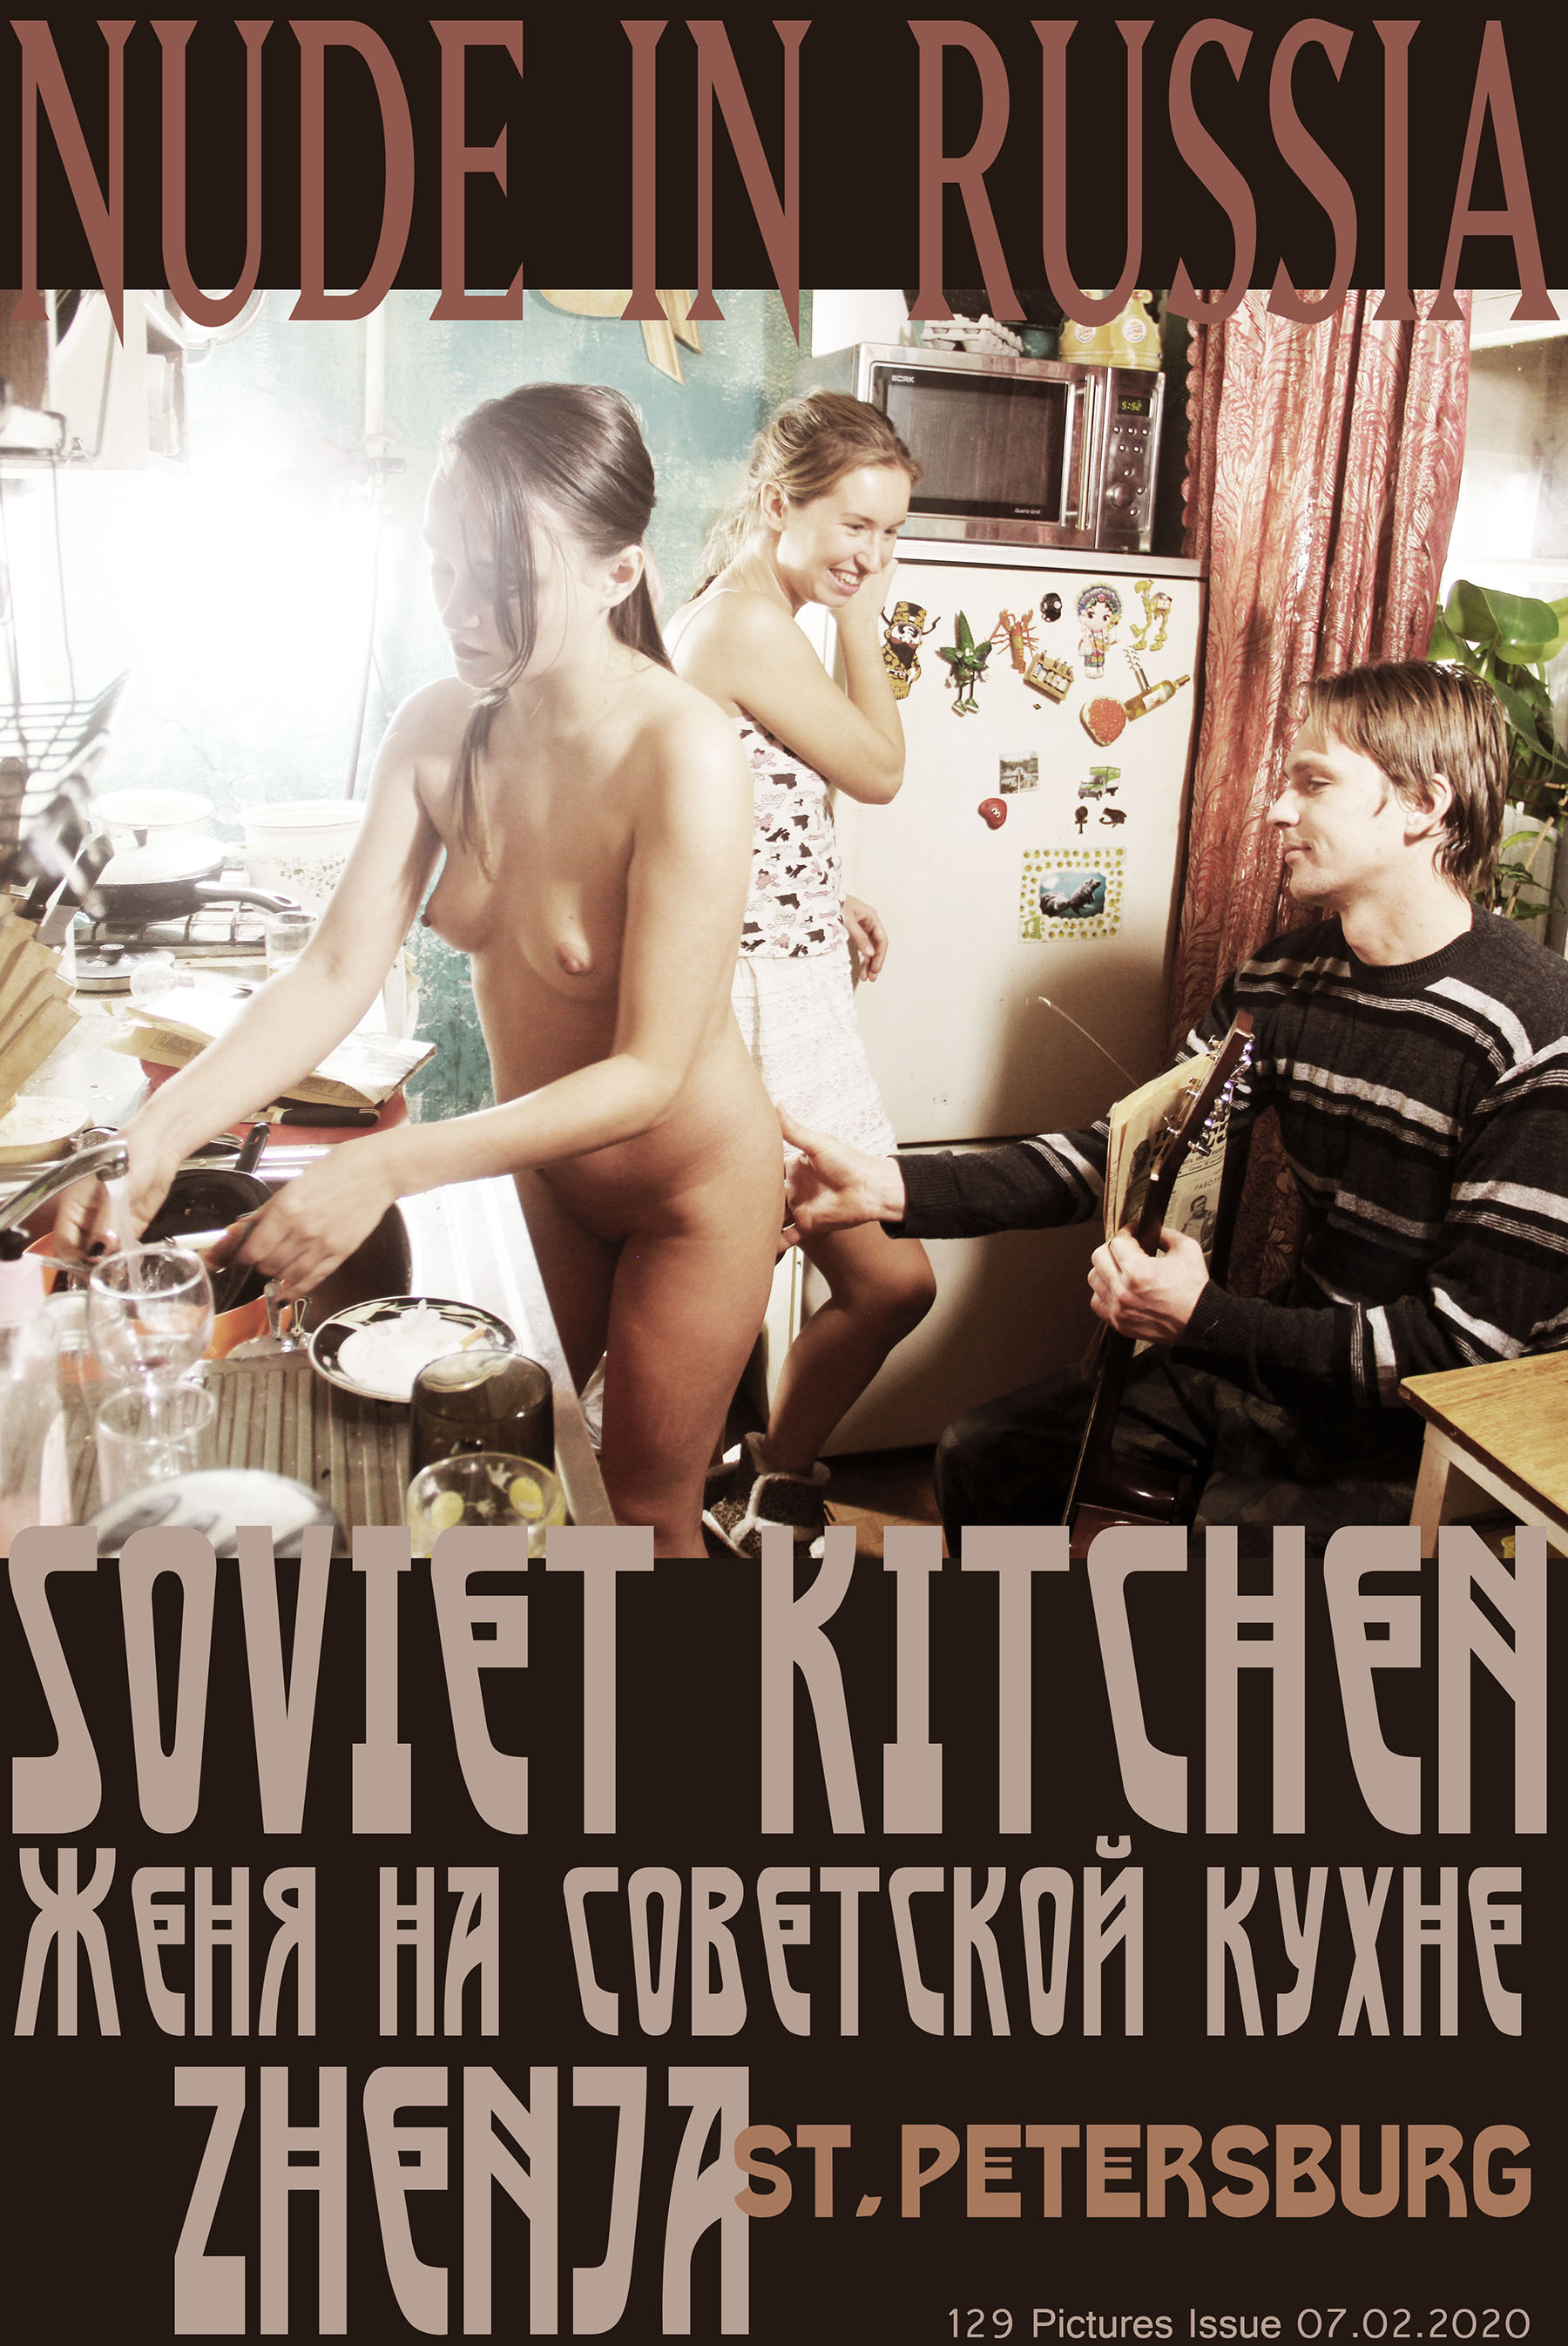 NIR-2020-02-07 - Zhenja - Soviet kitchen - set4 270 (1).jpg